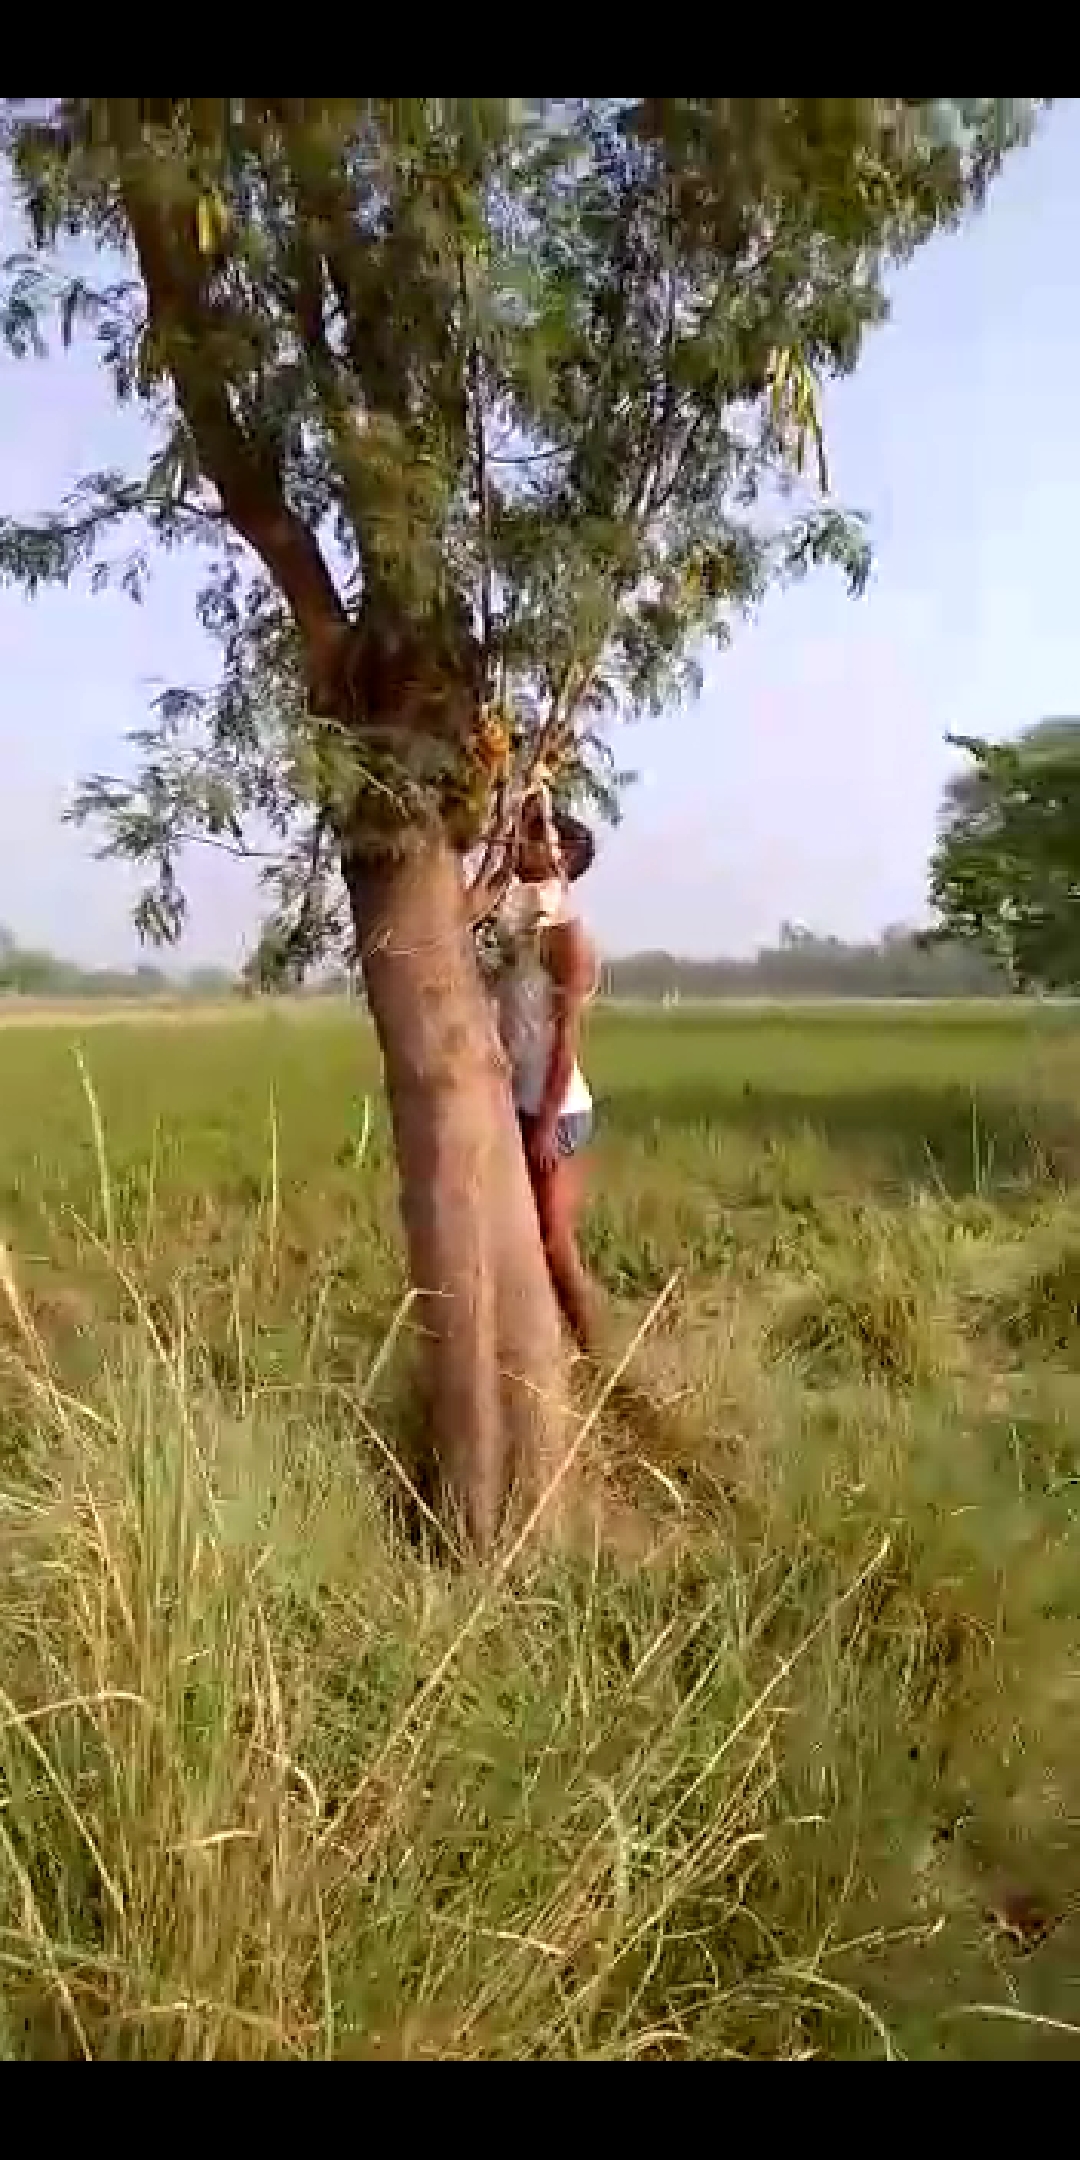 रायबरेली ऊंचाहार थाना क्षेत्र के बाग में युवक का संदिग्ध परिस्थितियों में पेड़ से लटकता हुआ मिला शव